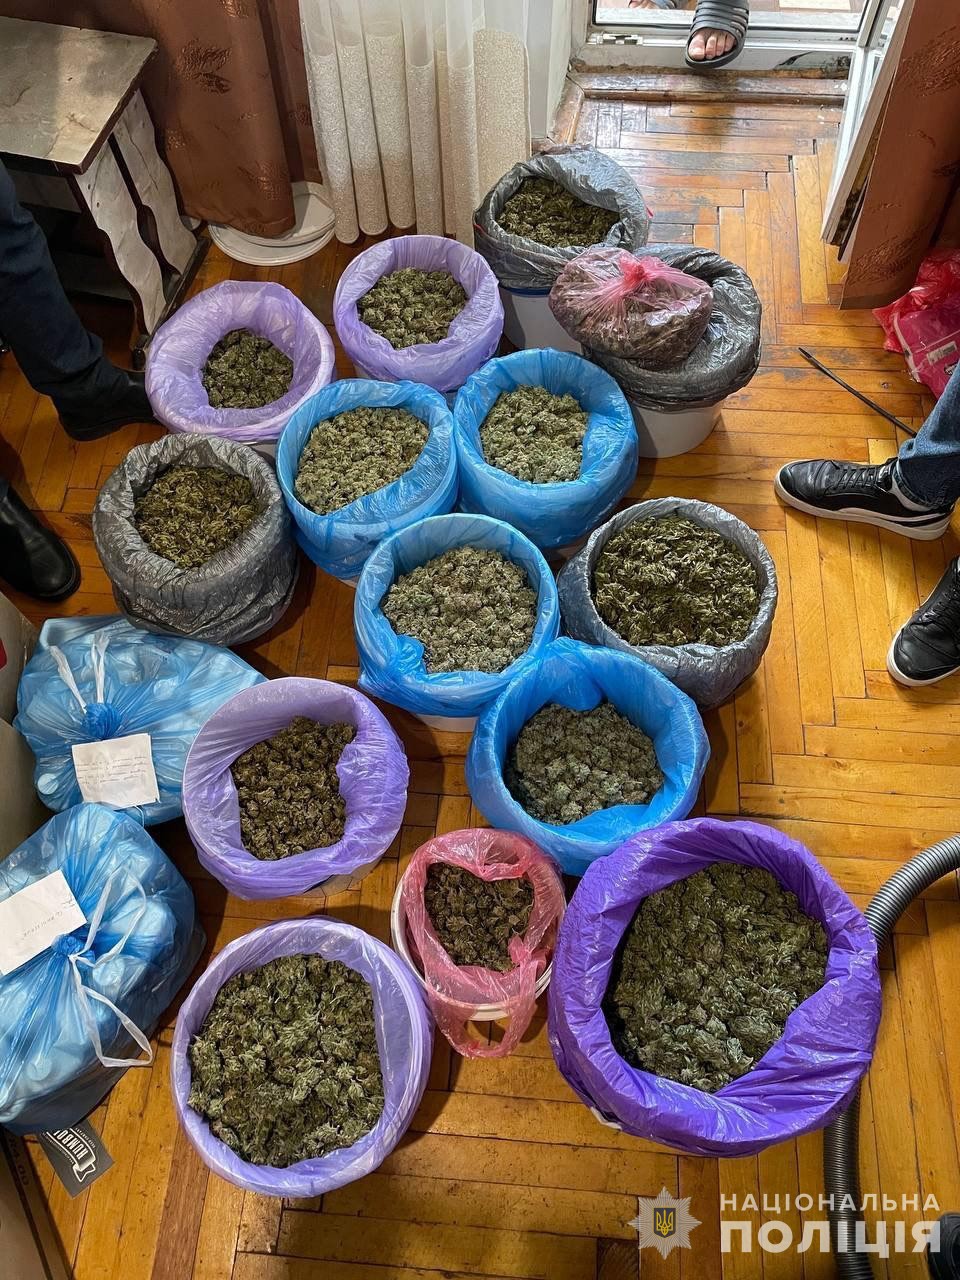 Нацполіція вилучила наркотики на 150 млн грн: Одеська область також була в мережі наркодилерів